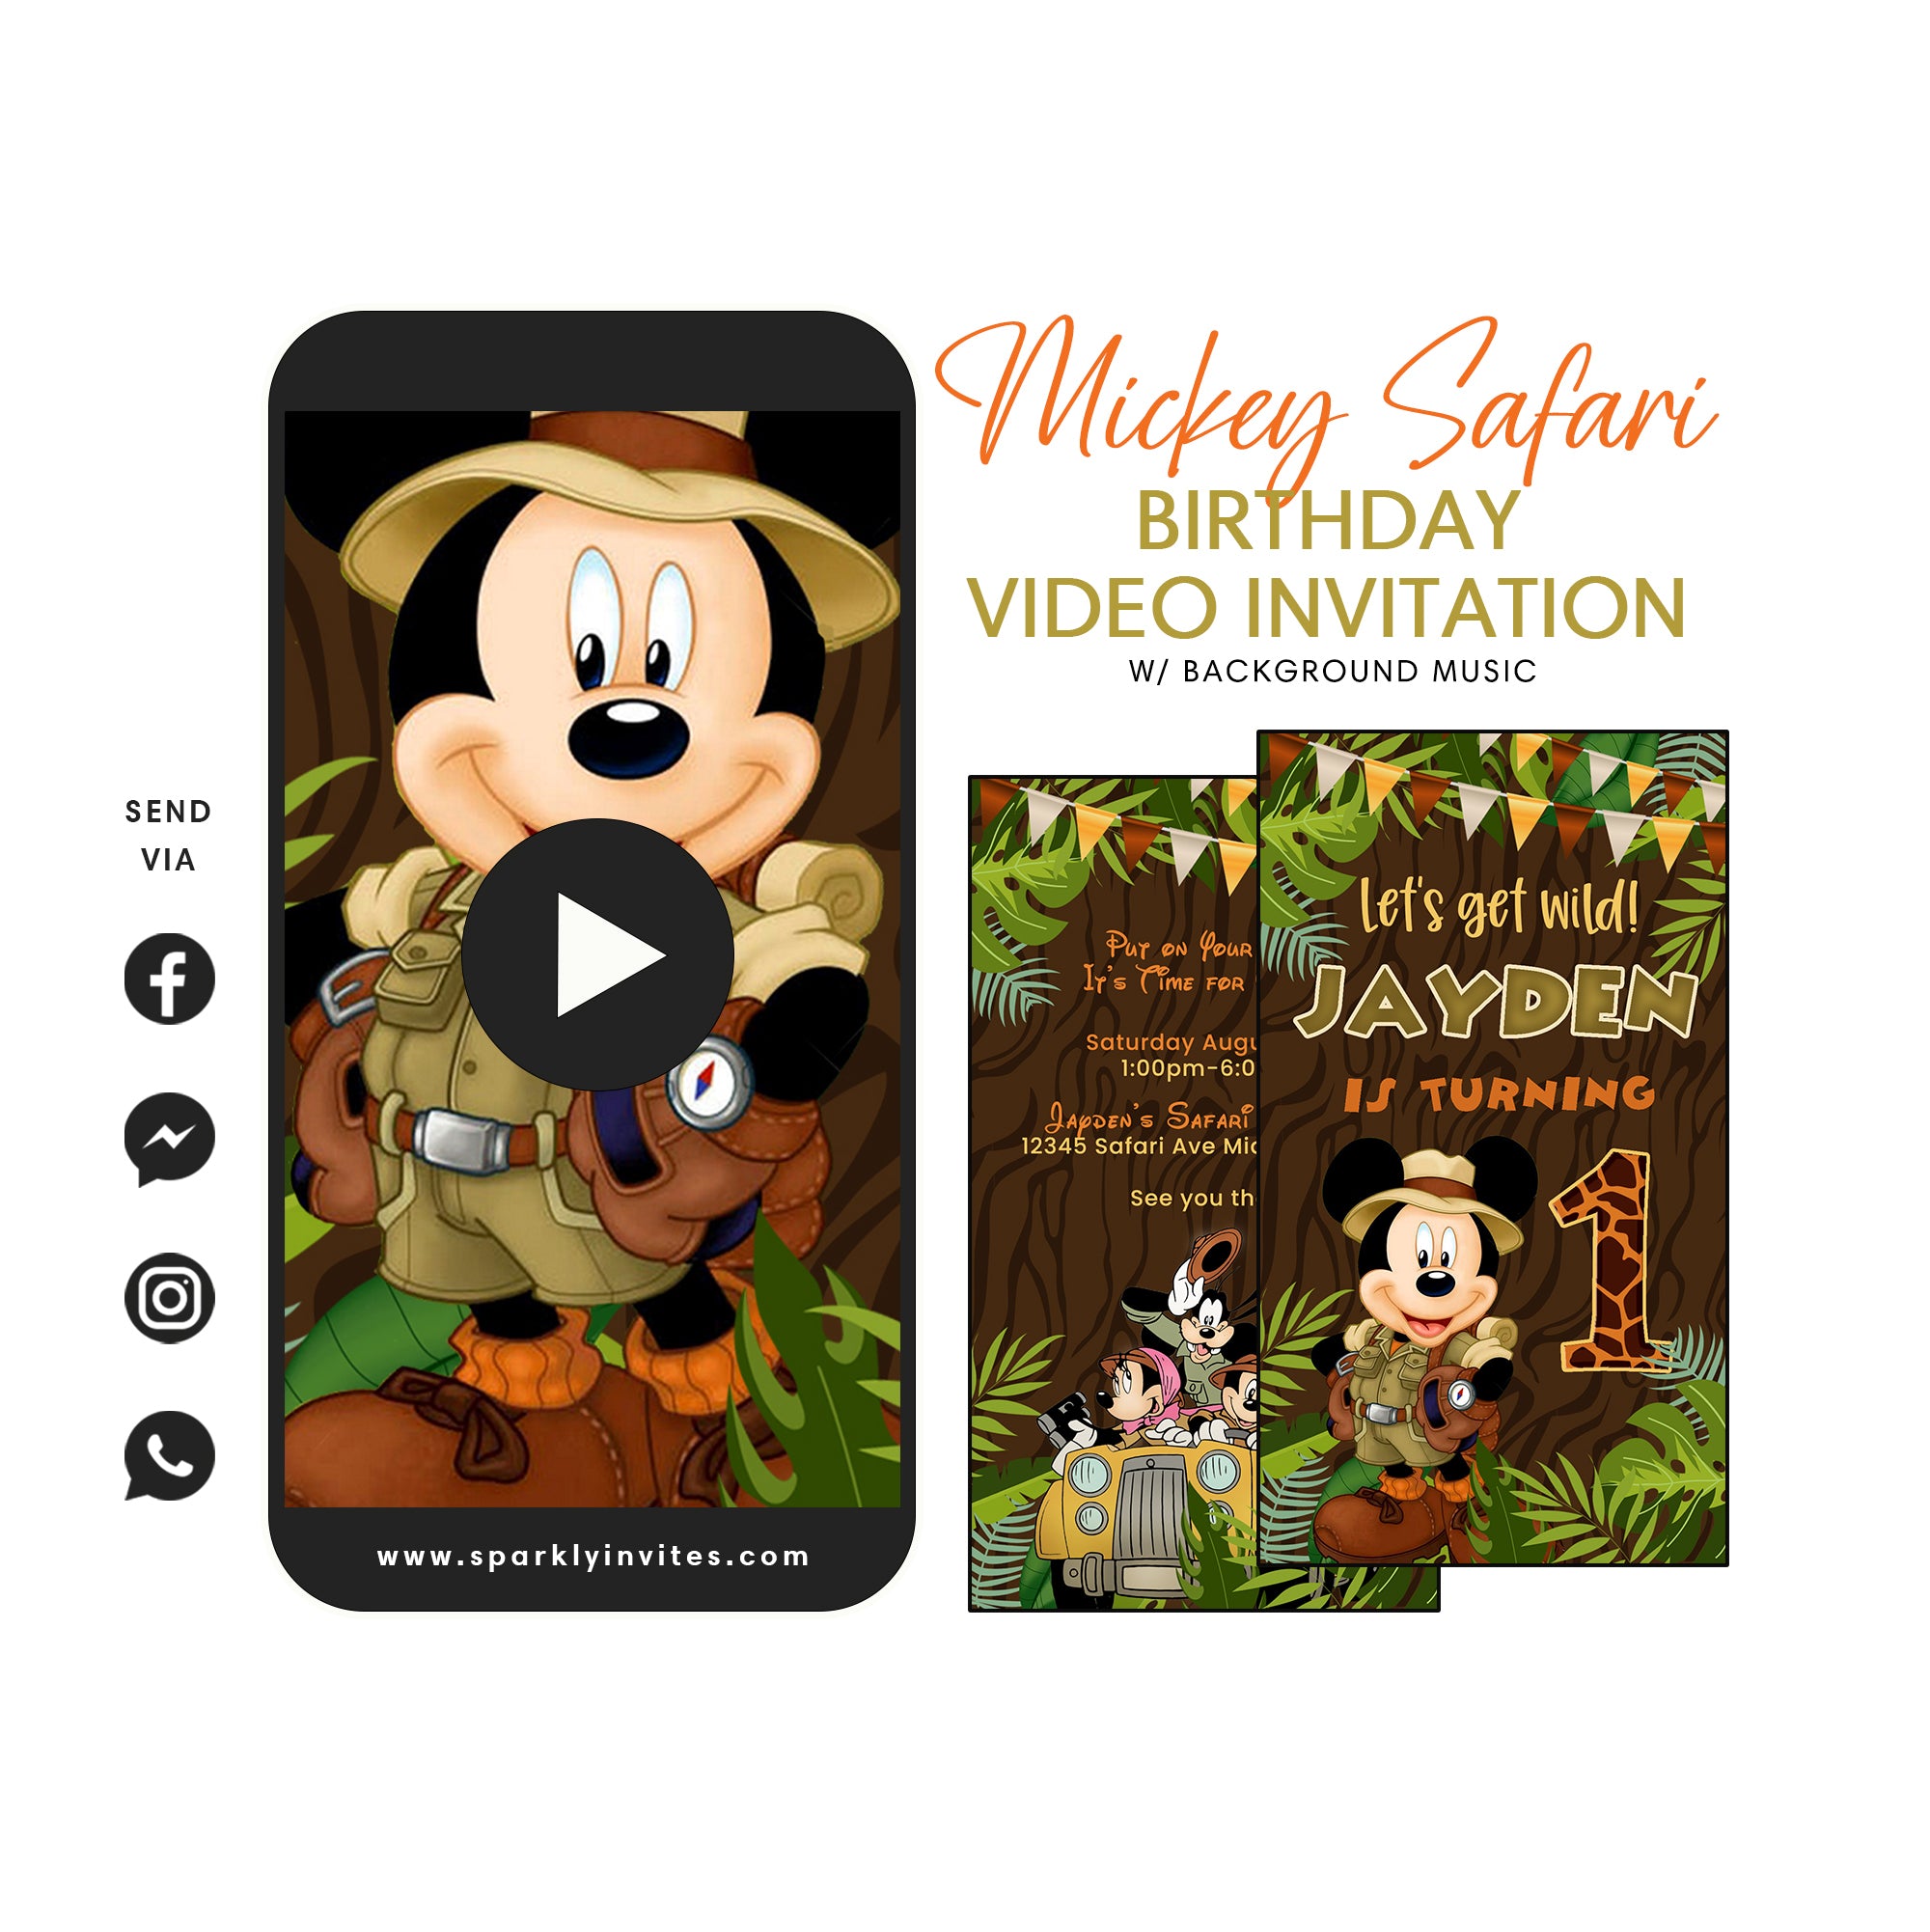 Mickey Safari Video Invitation